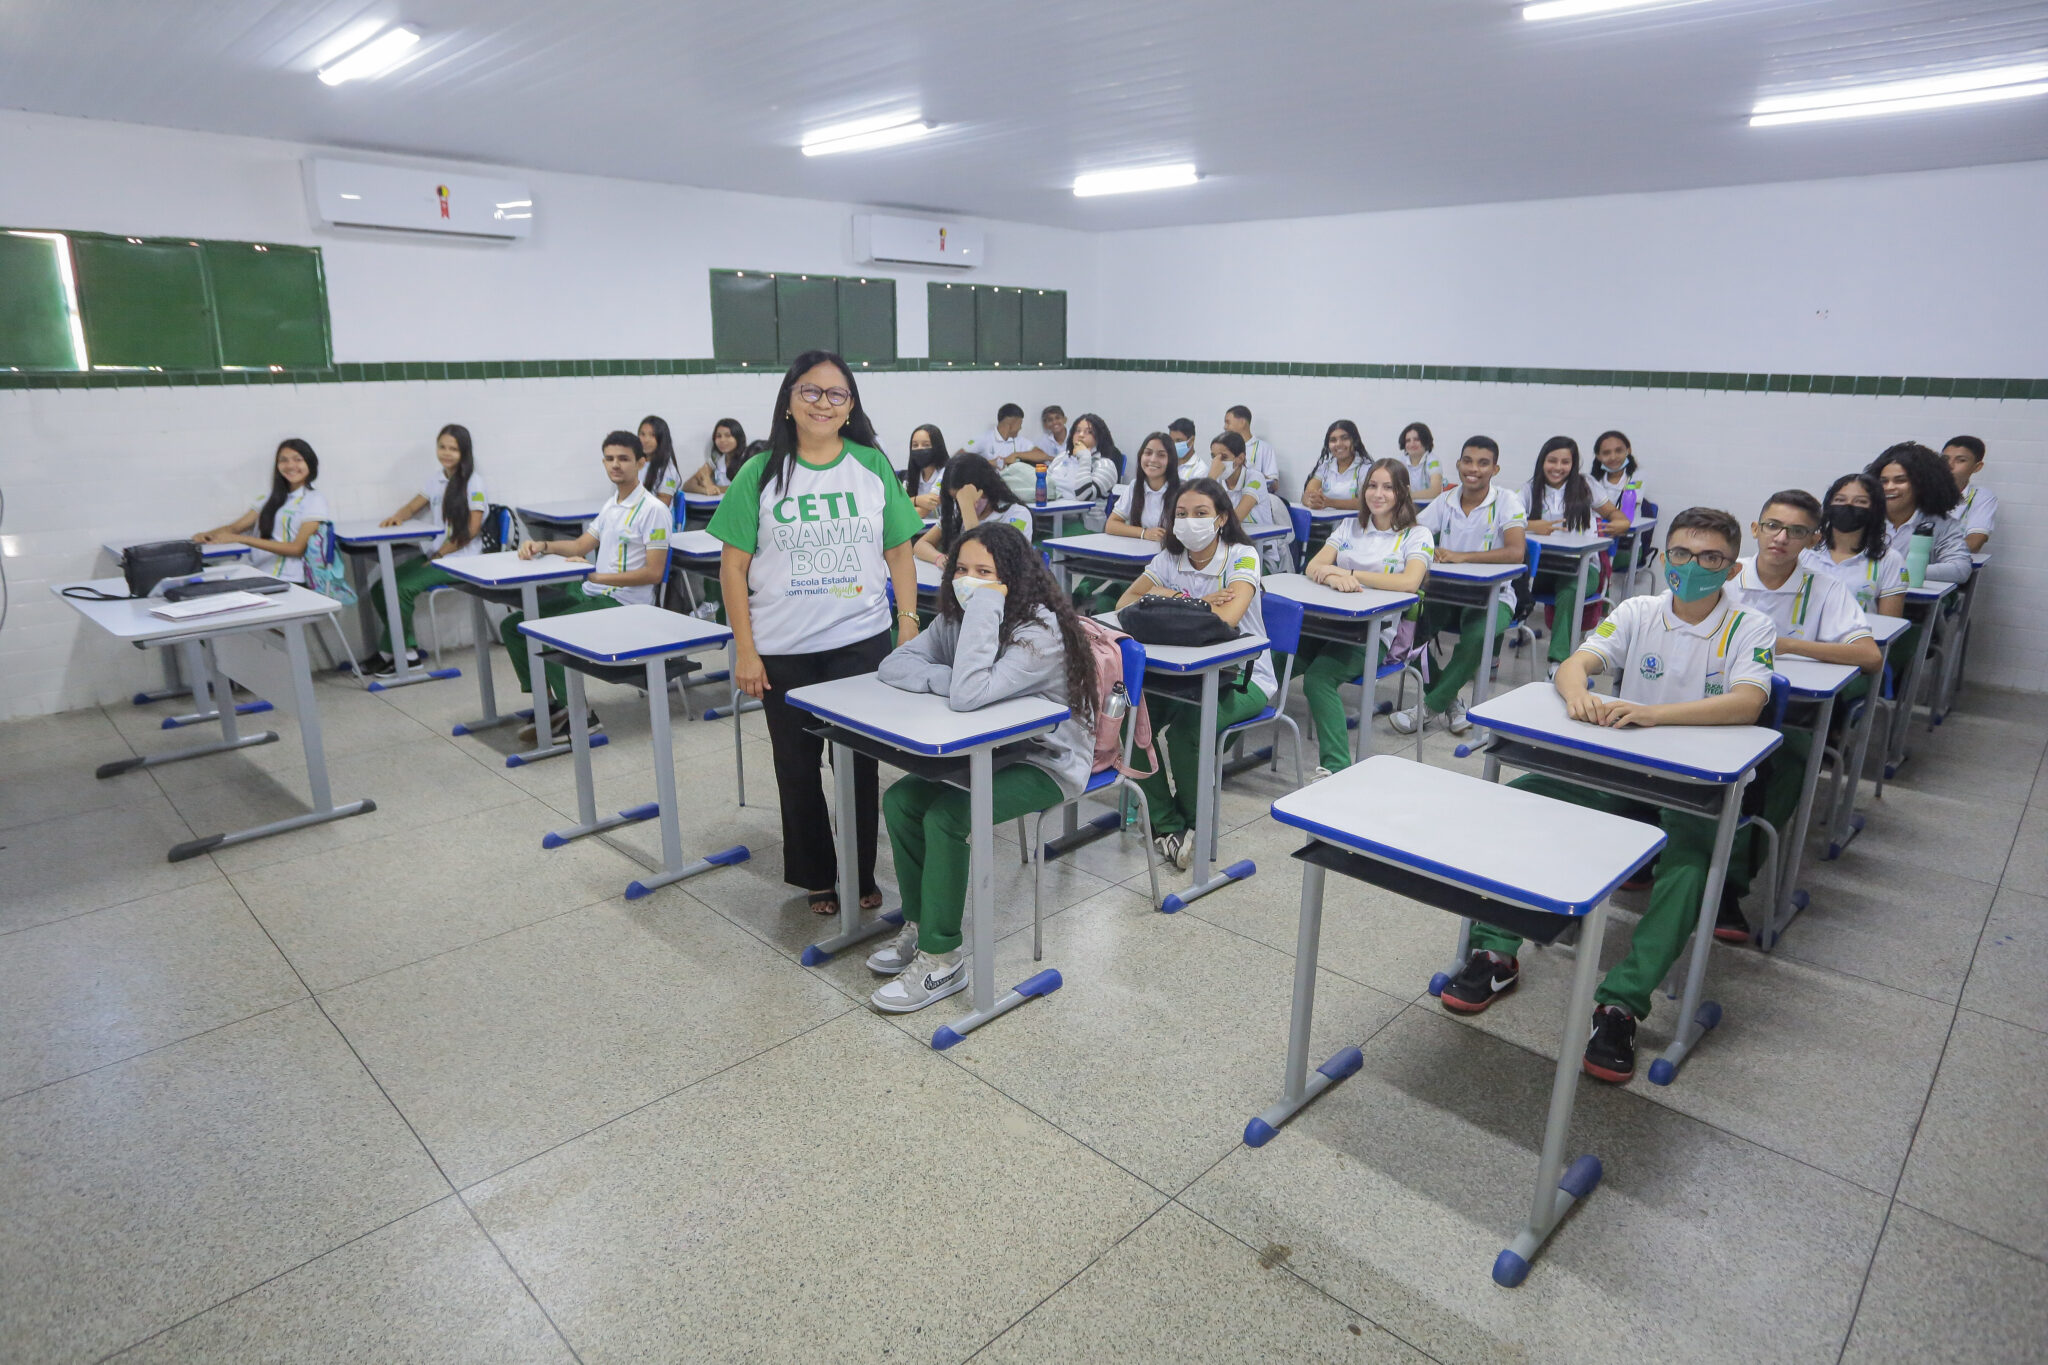 Piauí está entre os 10 estados com maior proporção de alunos no ensino médio em tempo integral